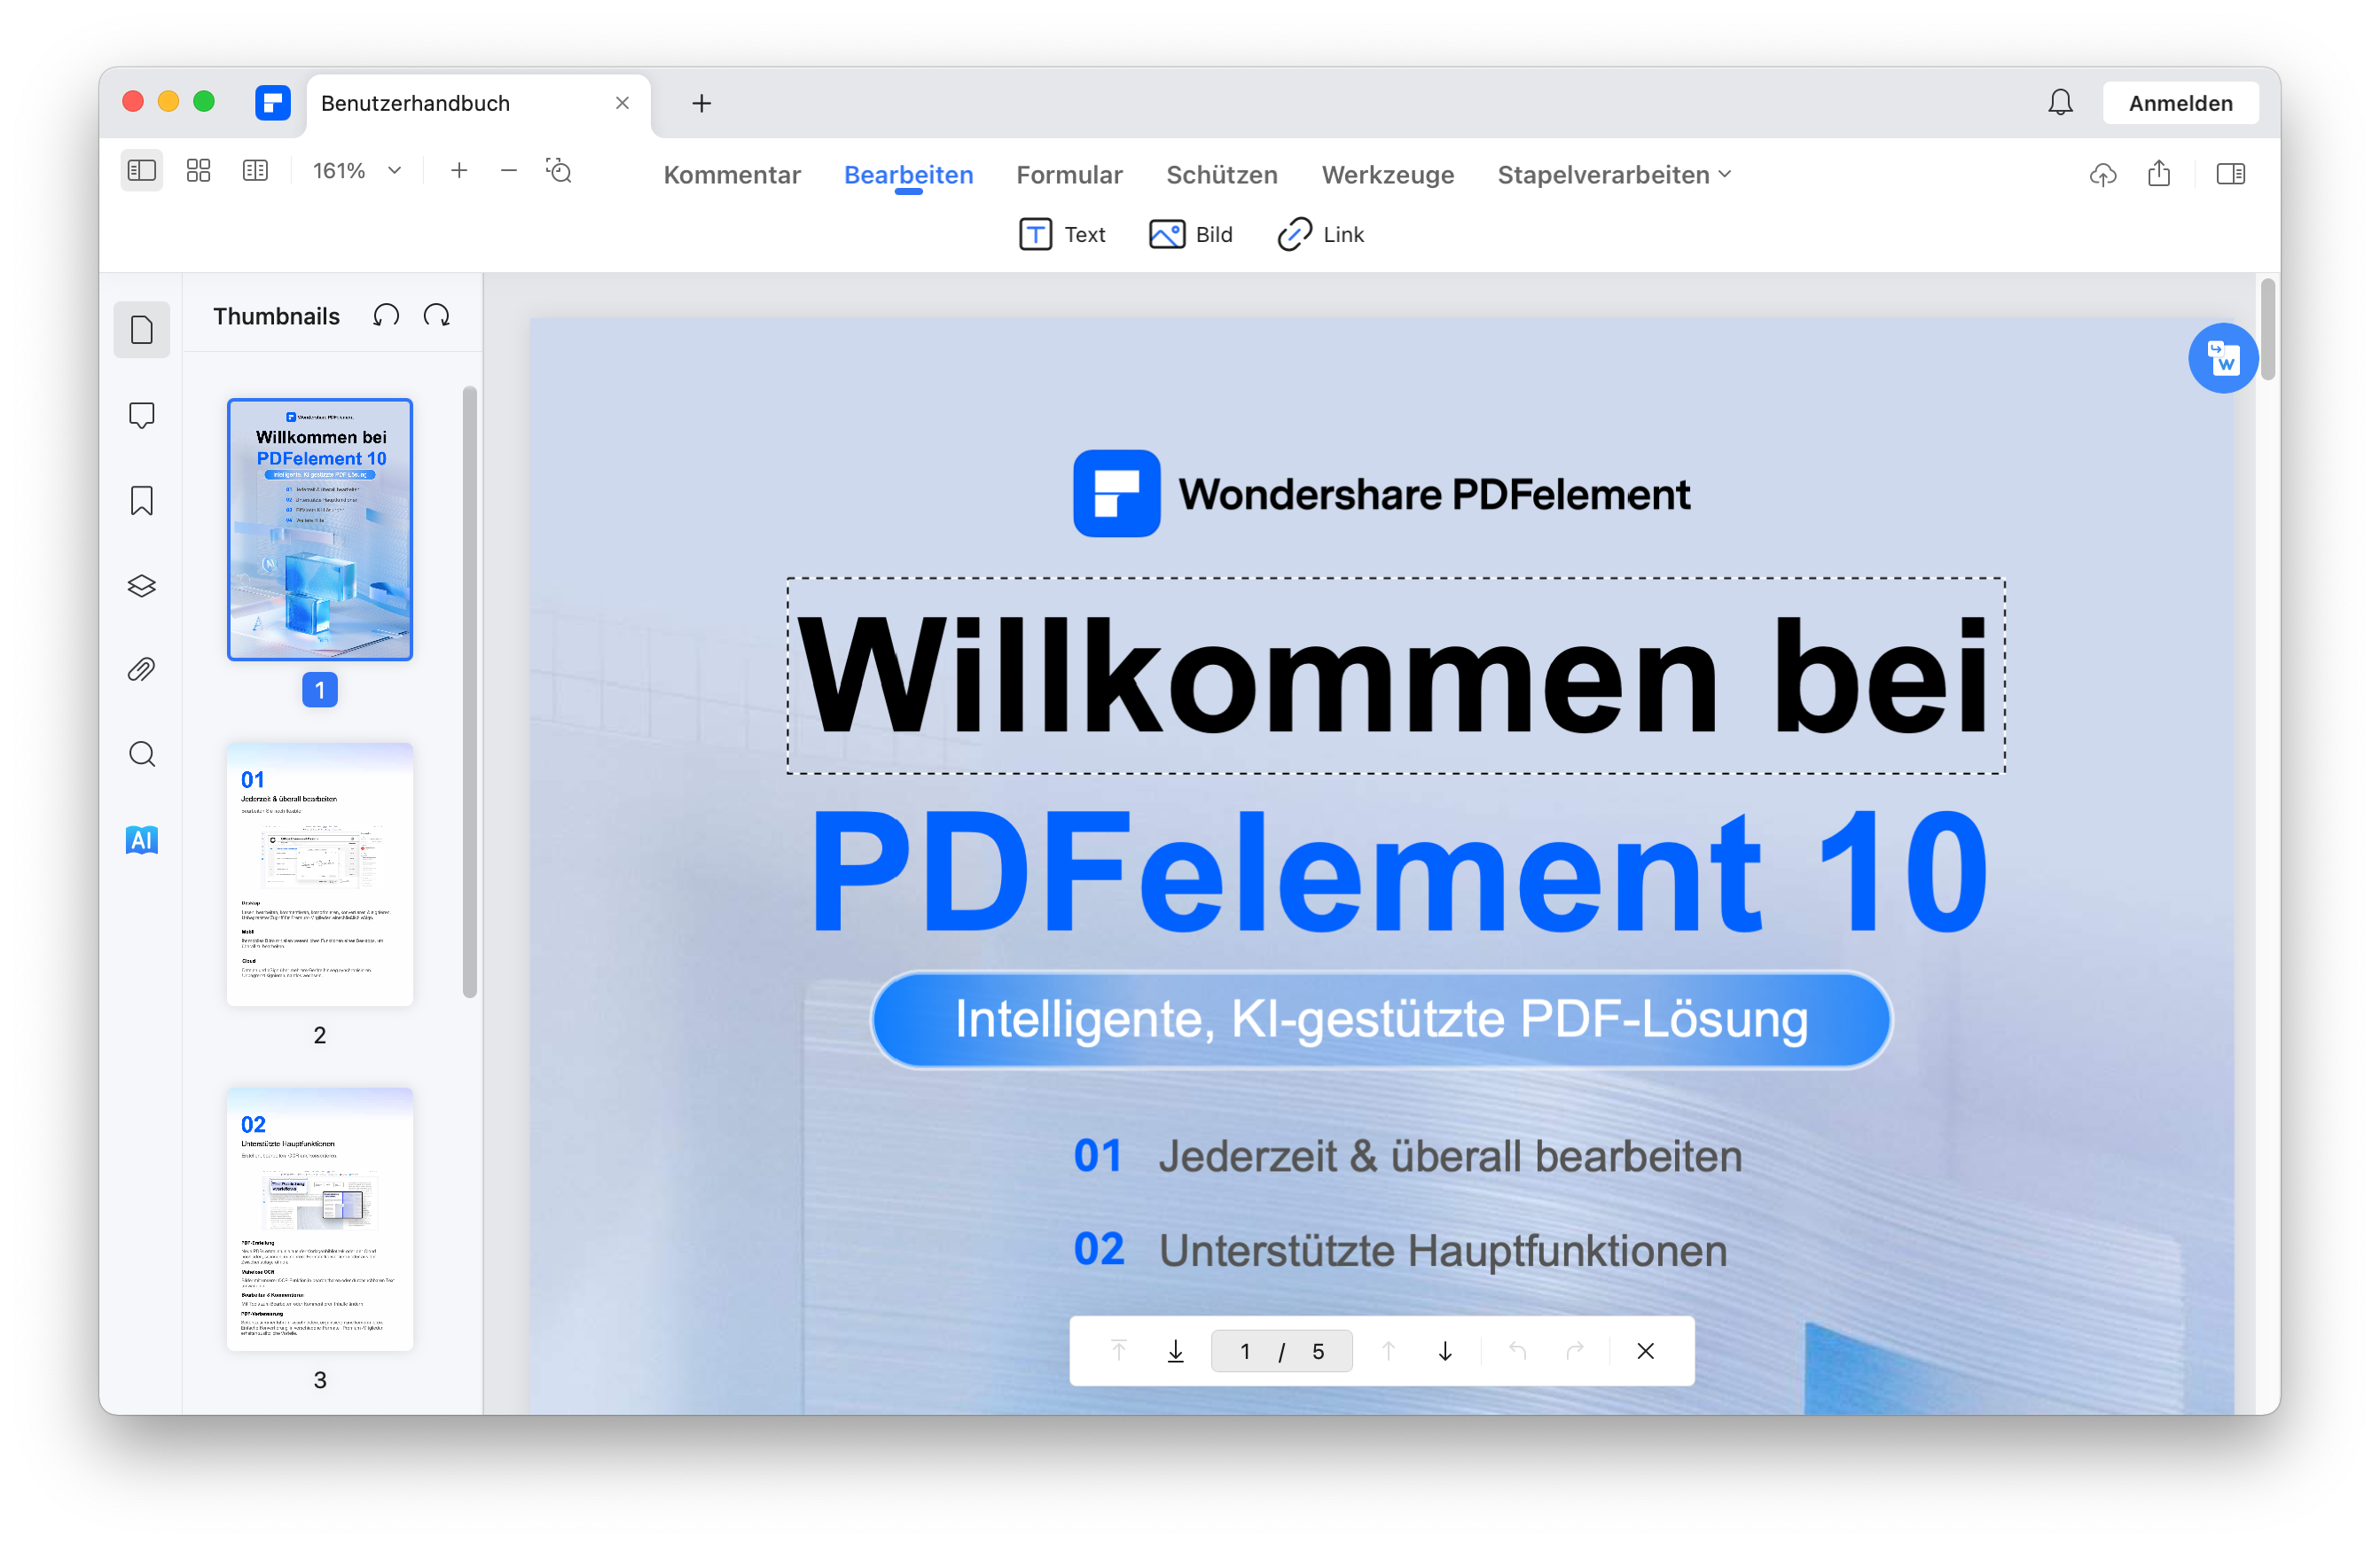 Wenn Sie Inhalte innerhalb des PDF-Dokuments ändern oder modifizieren möchten, können Sie in der oberen Symbolleiste auf die Schaltfläche „Bearbeiten“ klicken, um den Bearbeitungsmodus zu aktivieren.